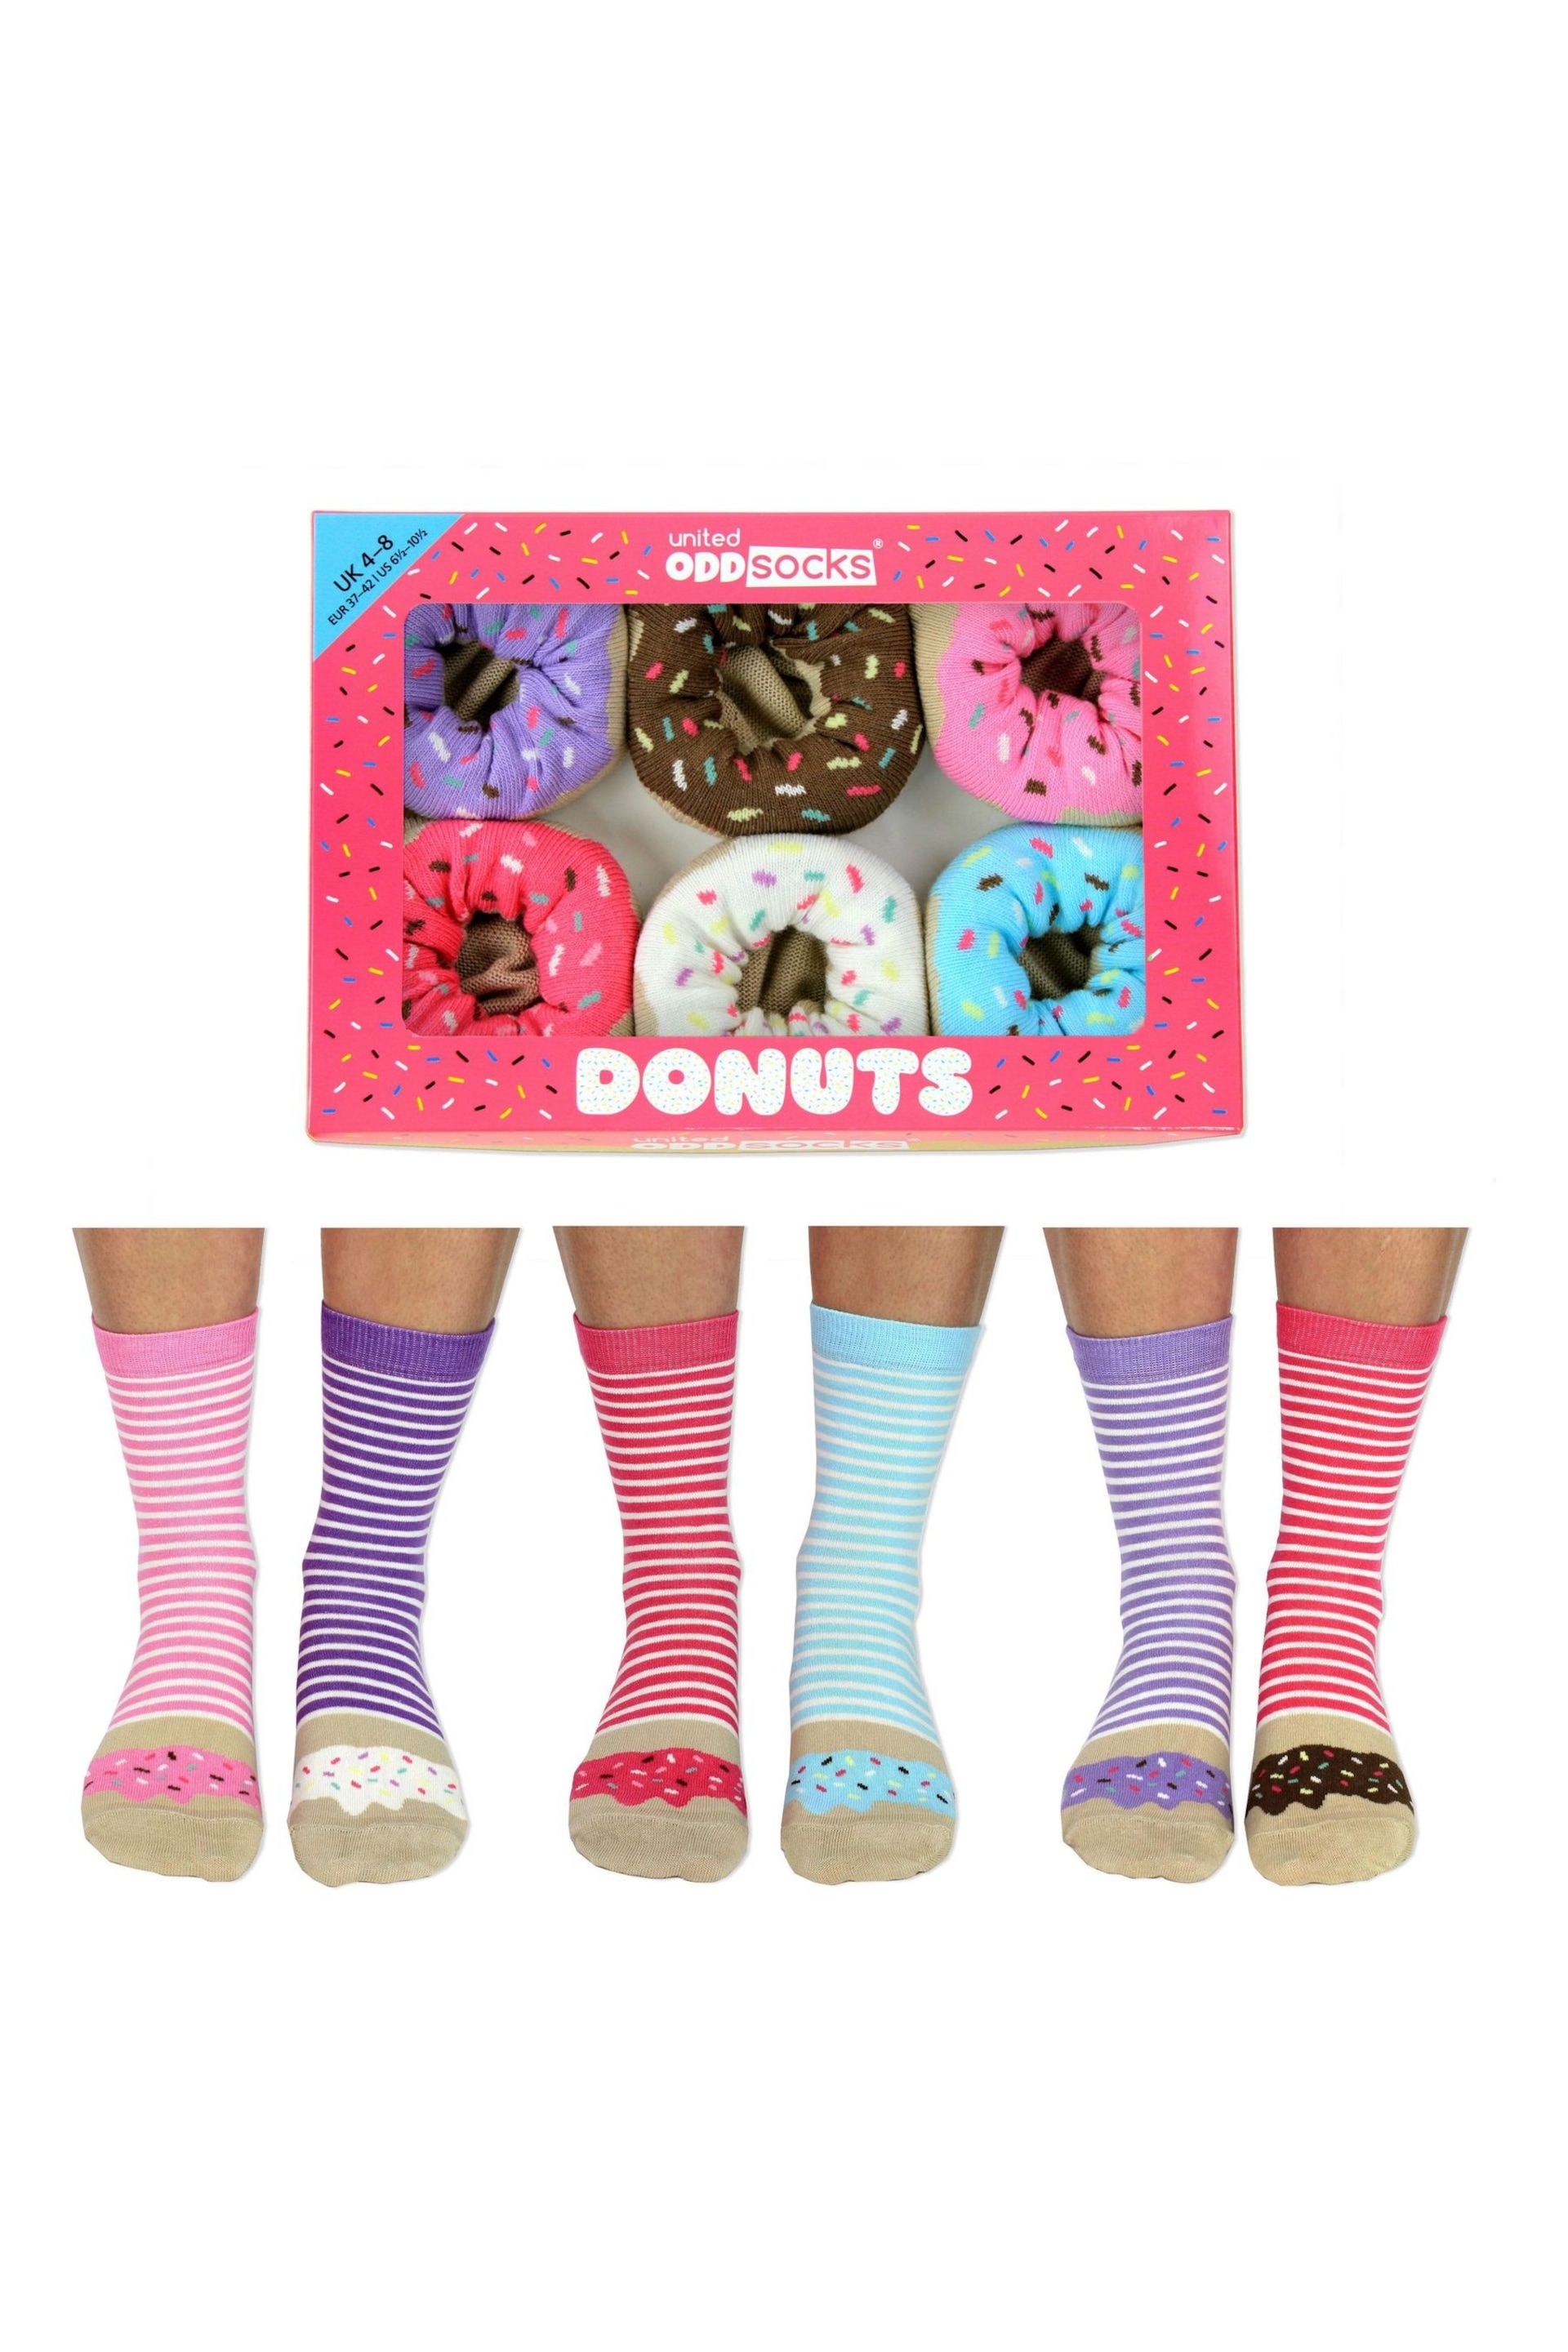 United Odd Socks Multi Stripe Donut Donuts Socks - Image 1 of 4